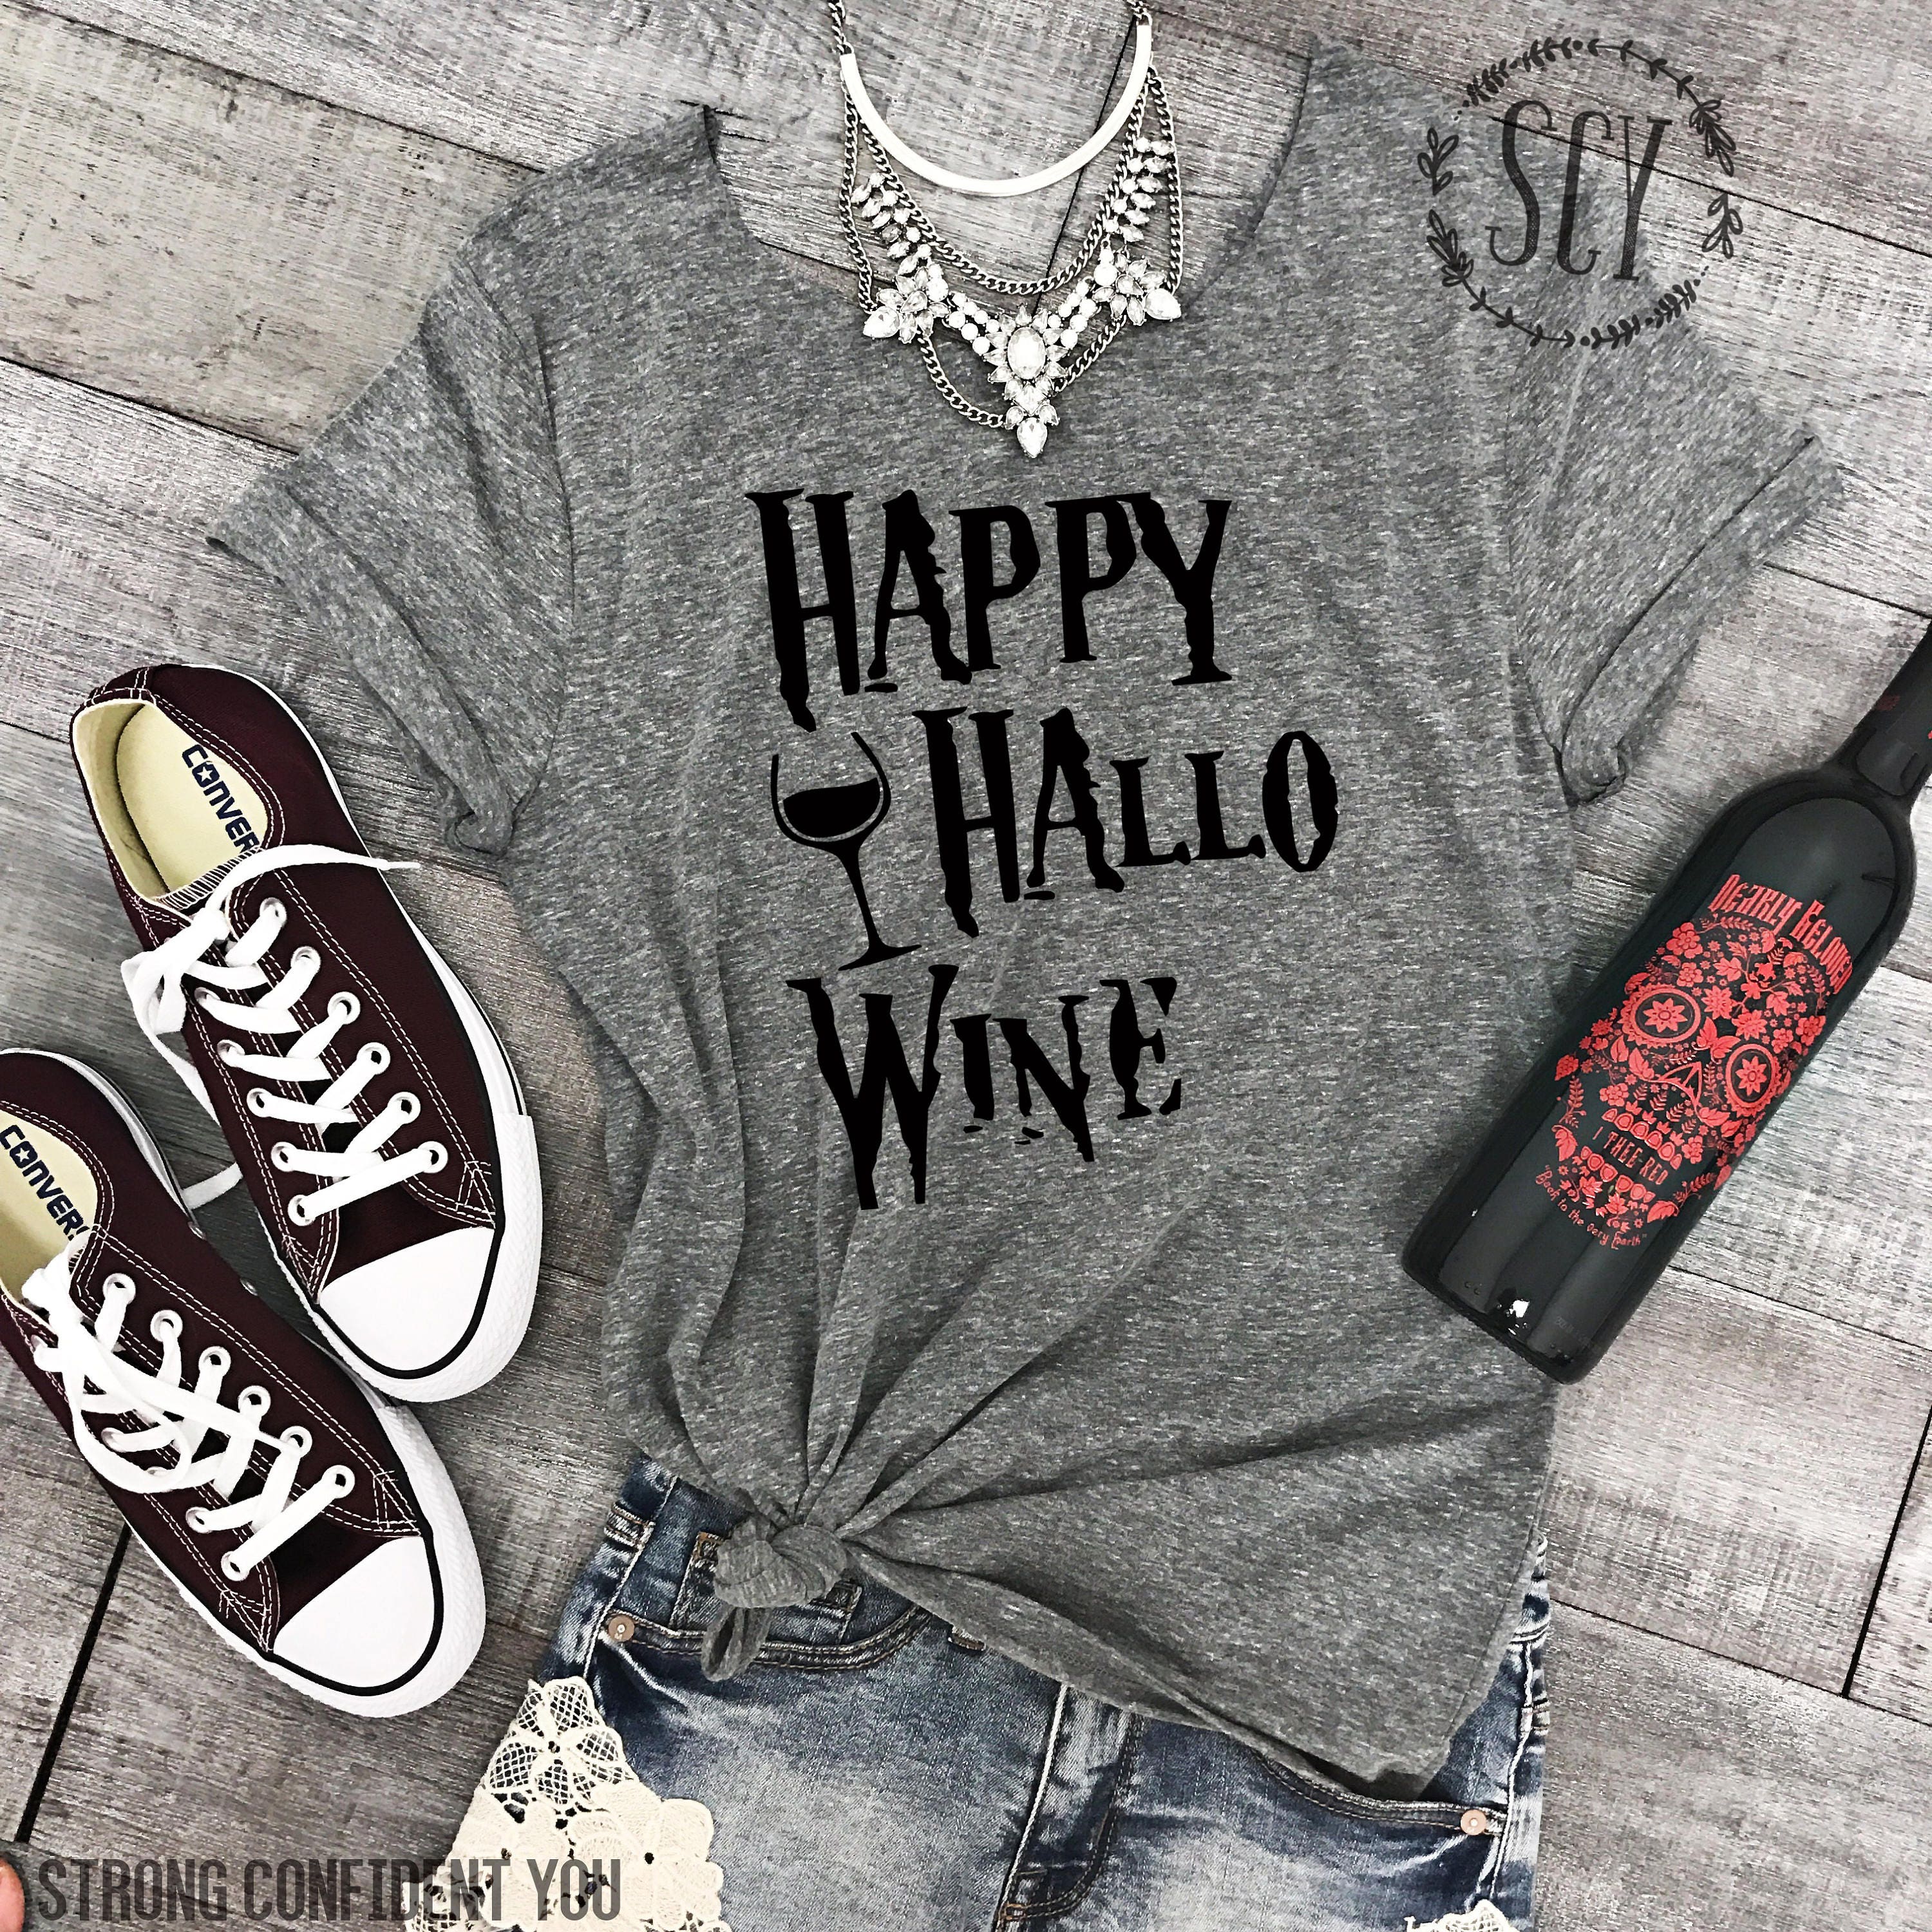 Happy Hallo Wine Shirt - Raw Edge Neck Halloween Tee Shirt - Funny Halloween Shirt - Funny Wine Tee Shirt - Merlot Shirt - Wine Tee